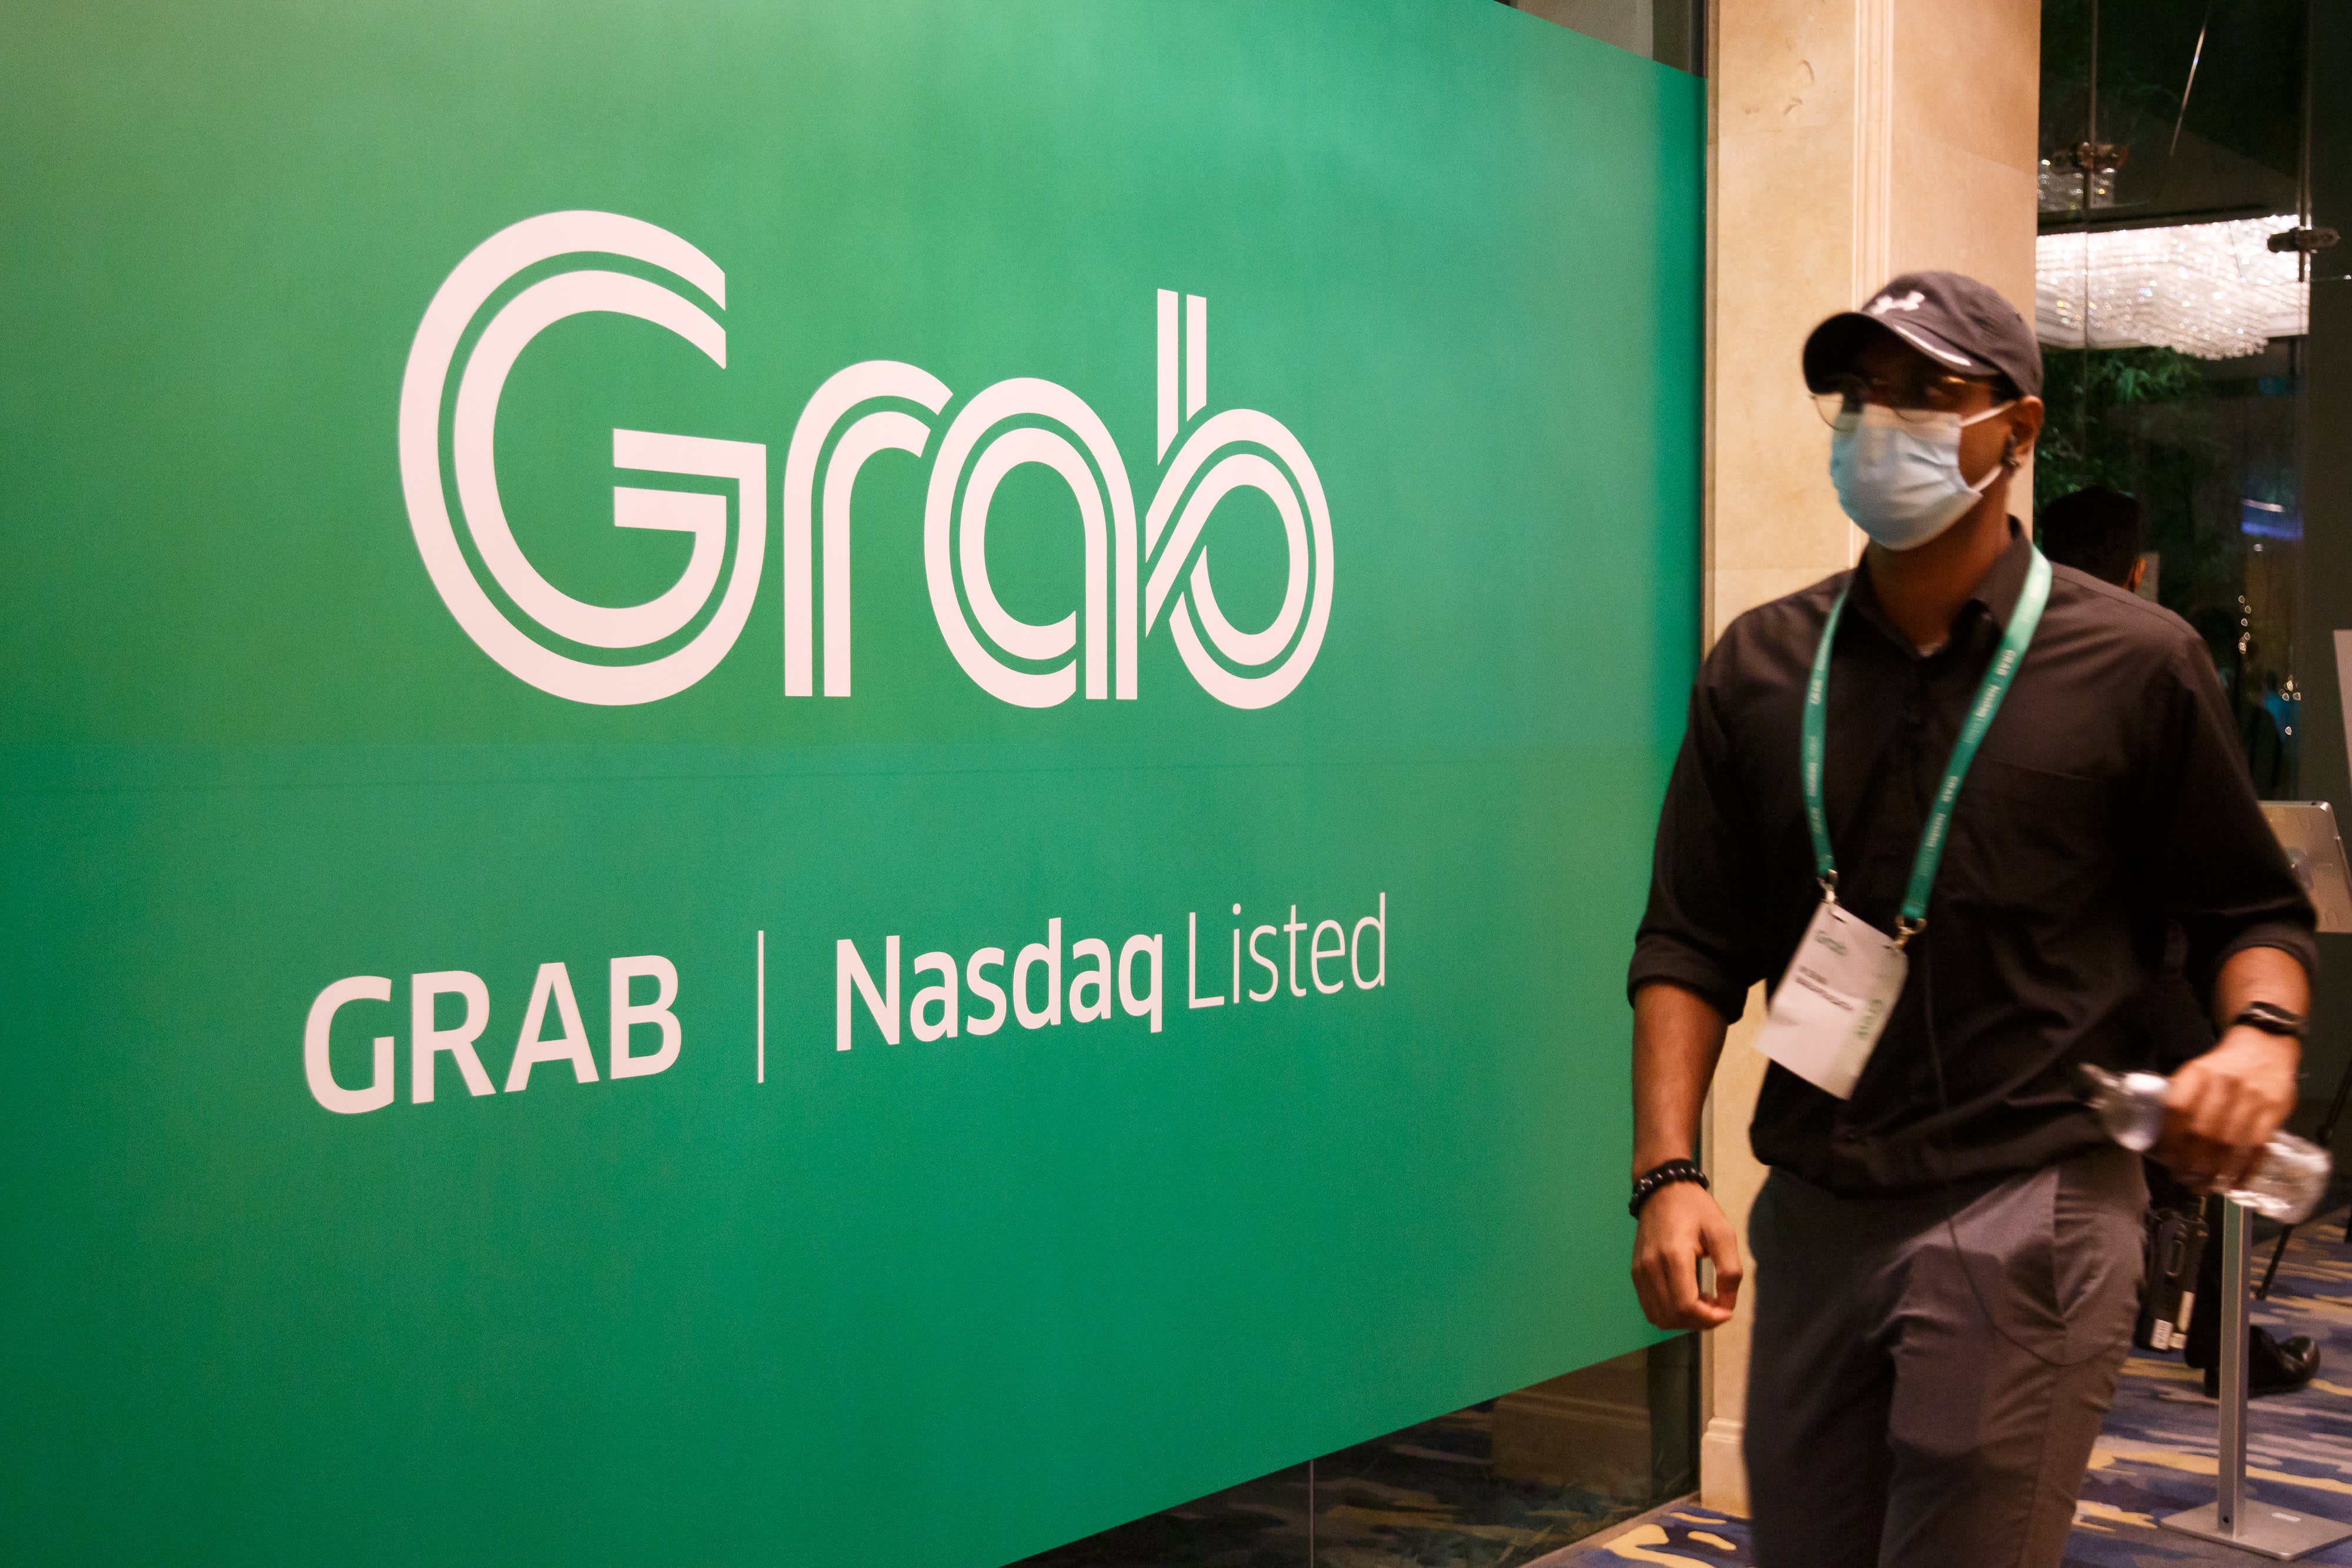 
Grab Holdings Inc được thành lập vào năm 2012, sau đó nhanh chóng vươn lên và trở thành công ty tư nhân có giá trị lớn nhất Đông Nam Á trước thời điểm IPO
